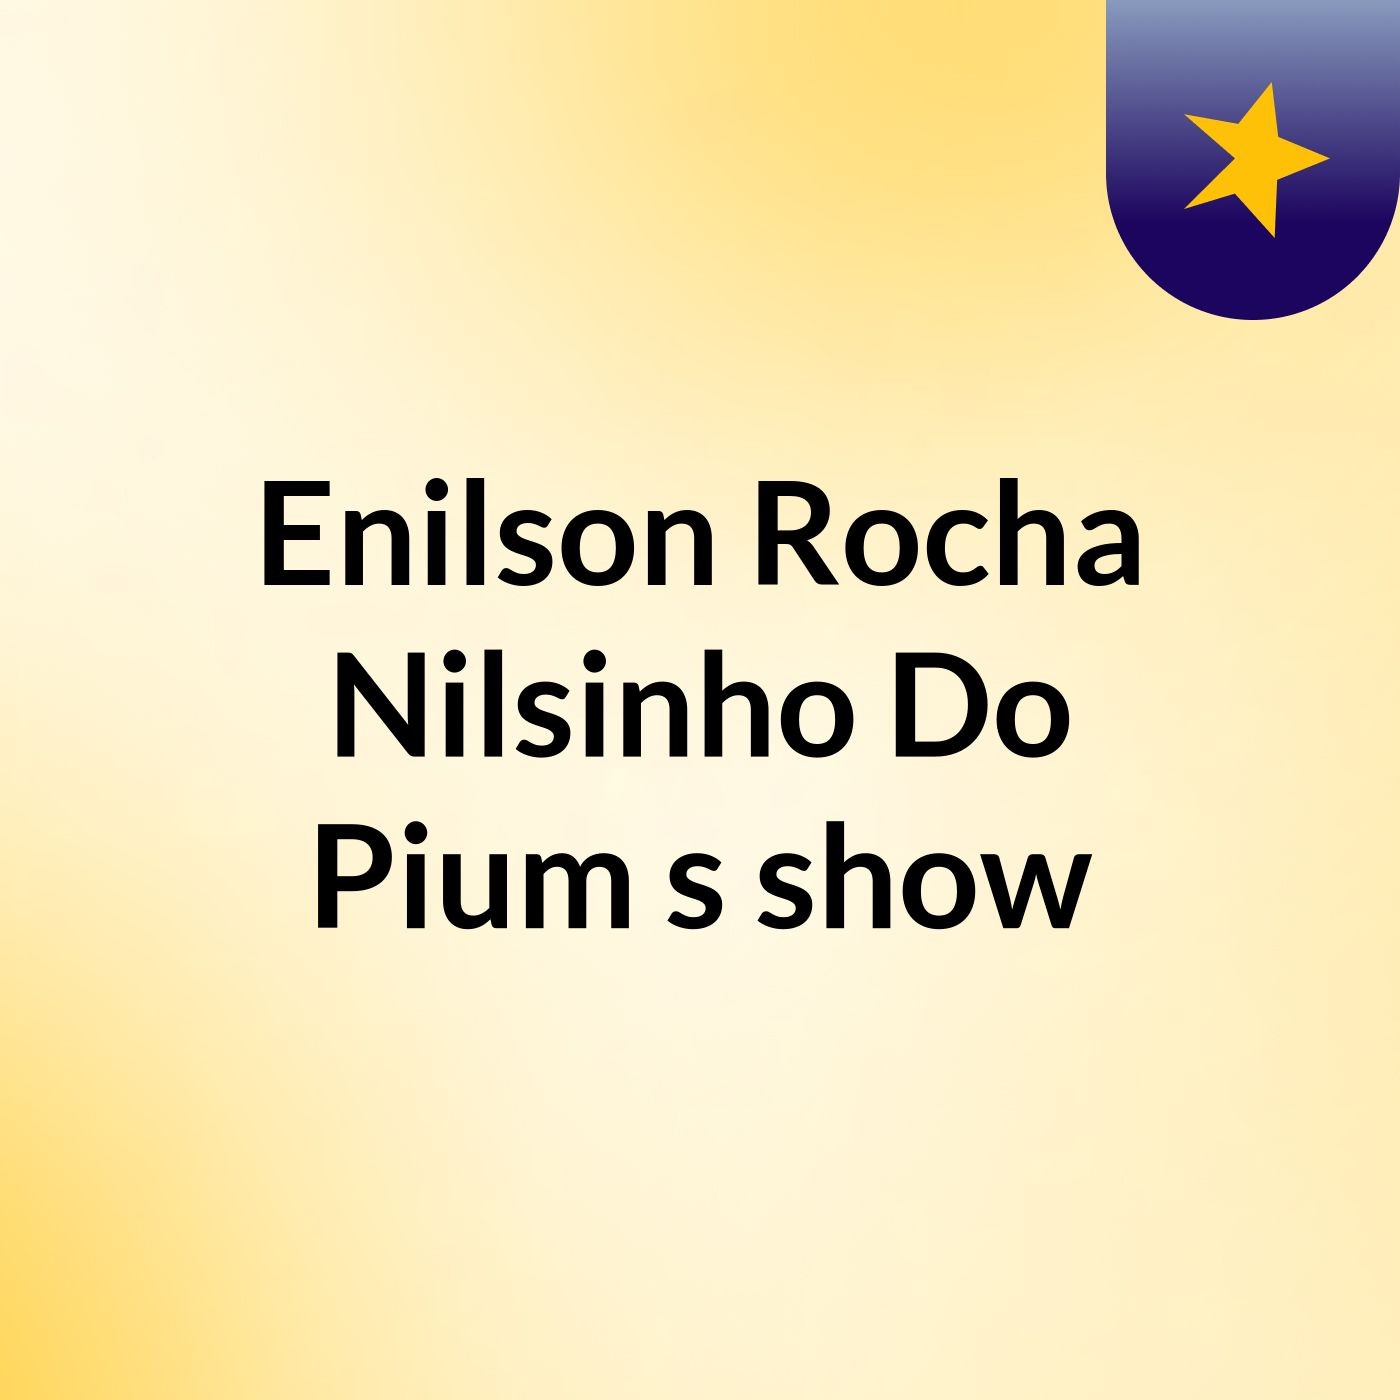 Enilson Rocha Nilsinho Do Pium's show